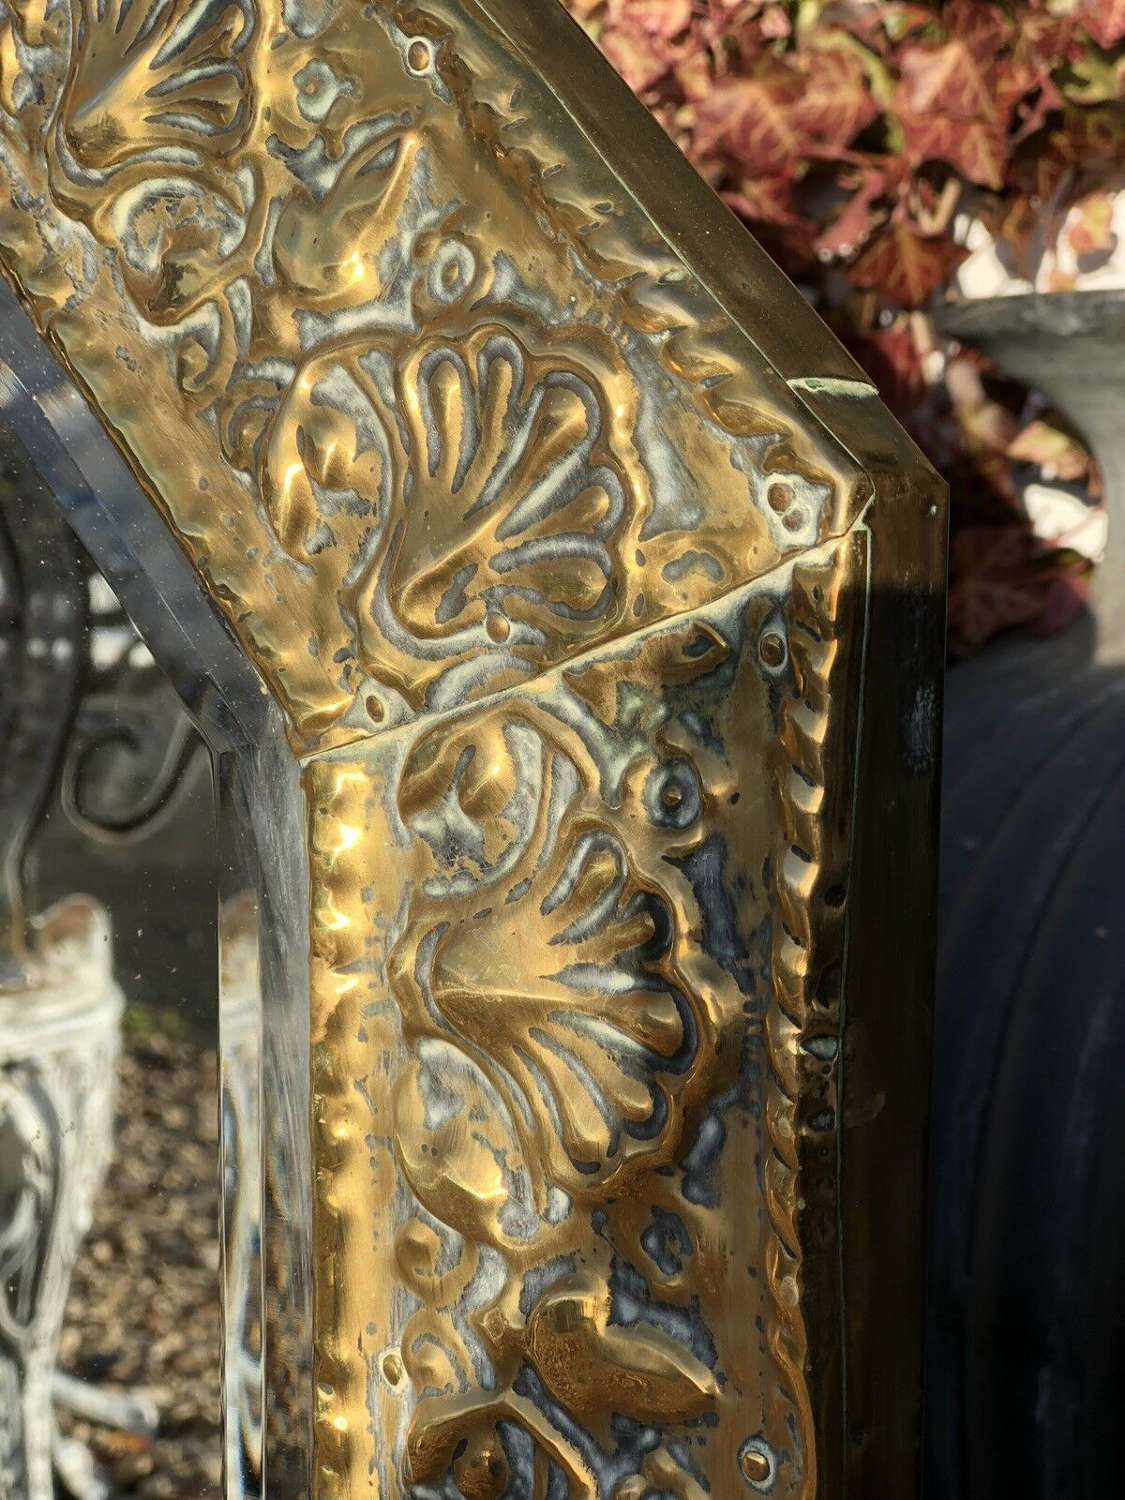 Antique brass mirror